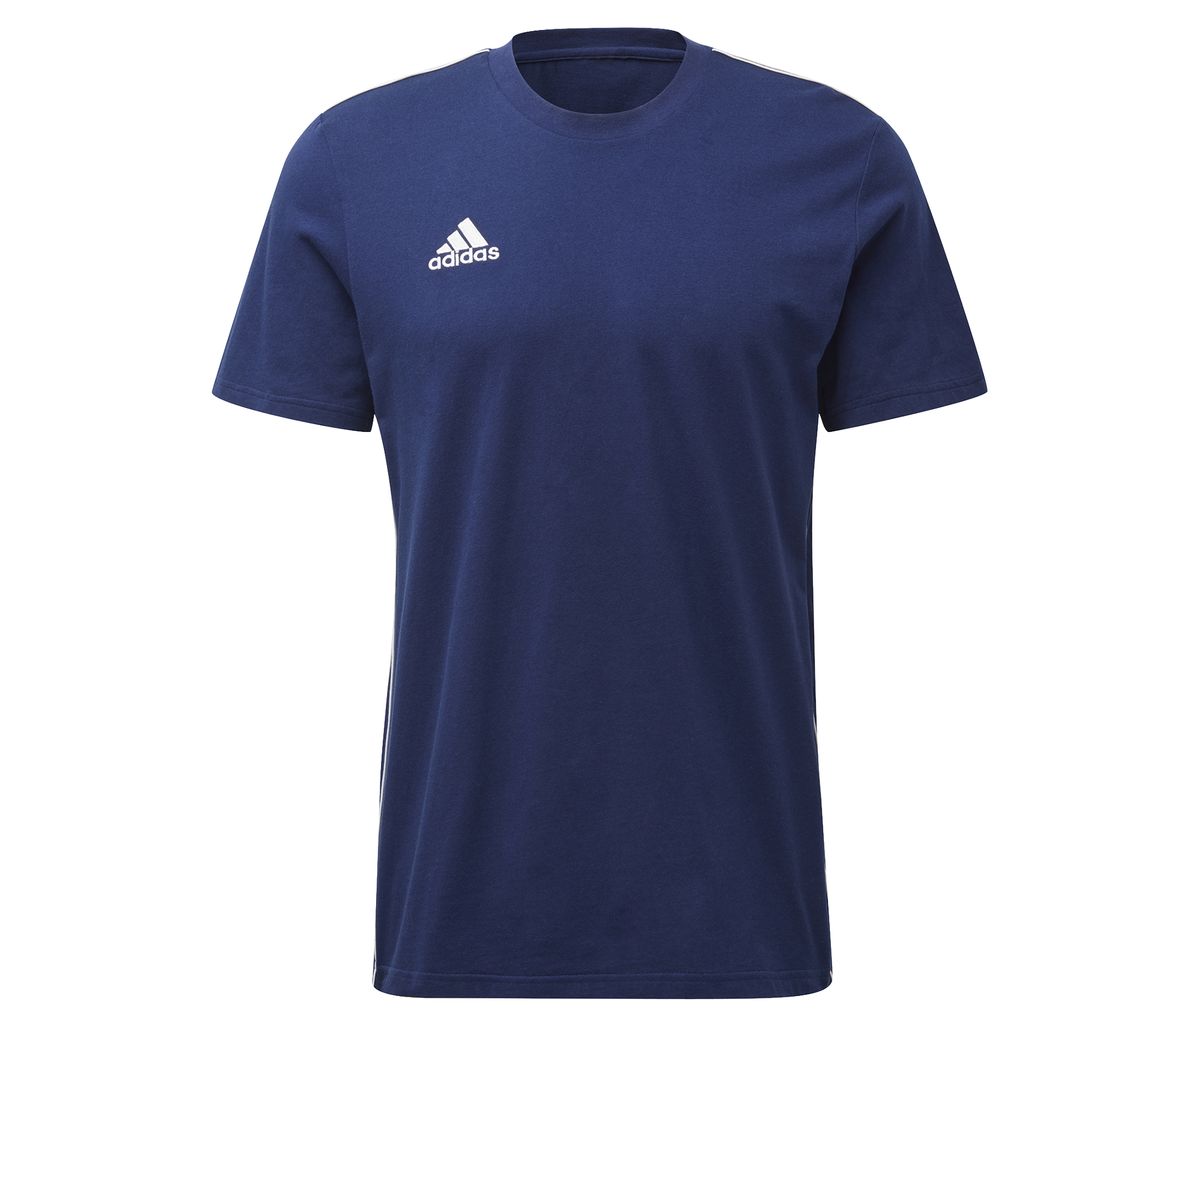 Adidas Core 18 T-Shirt Herren